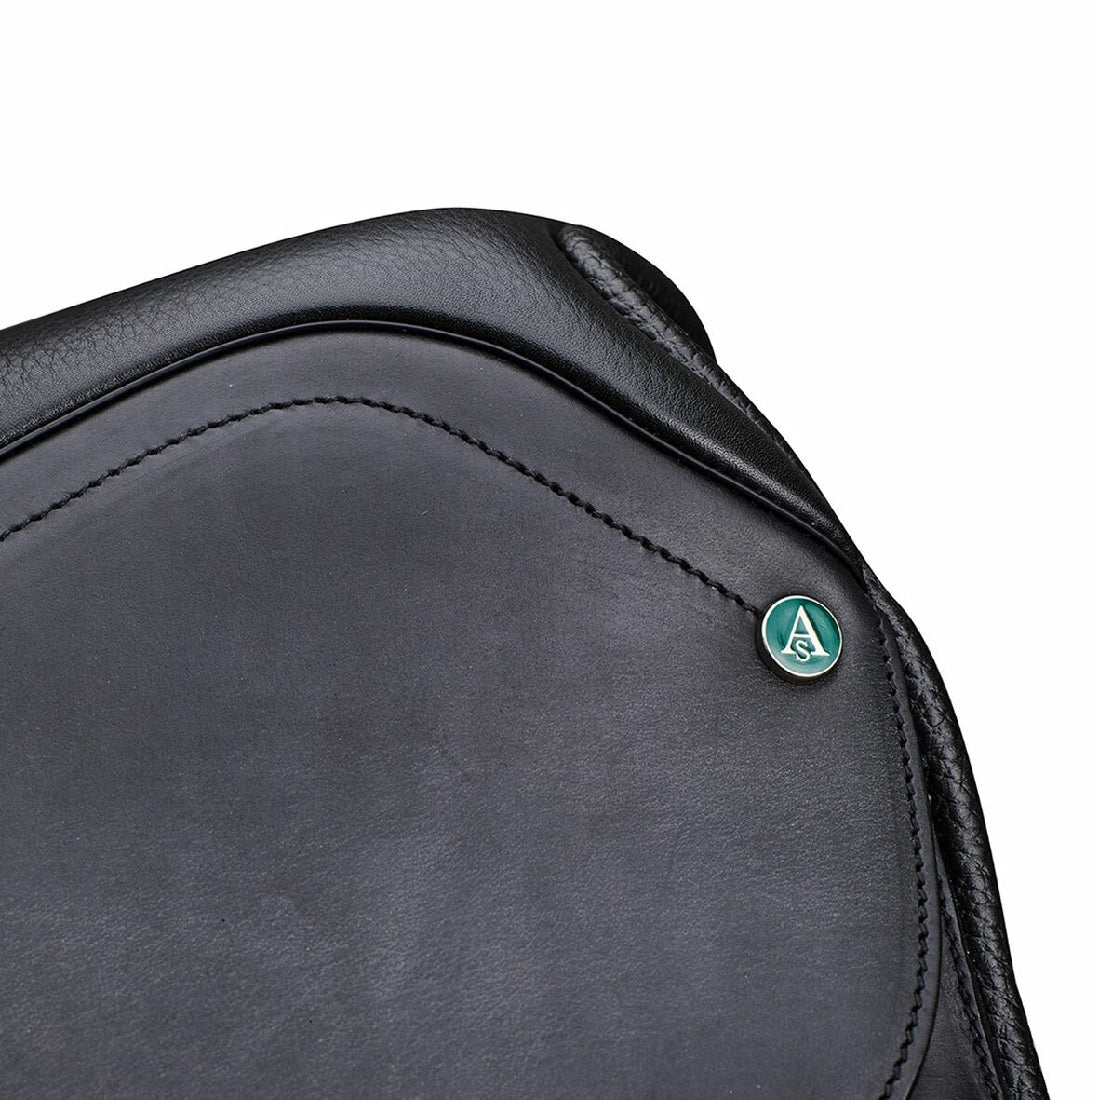 Close-up of Arena Saddles logo on black horse saddle leather.